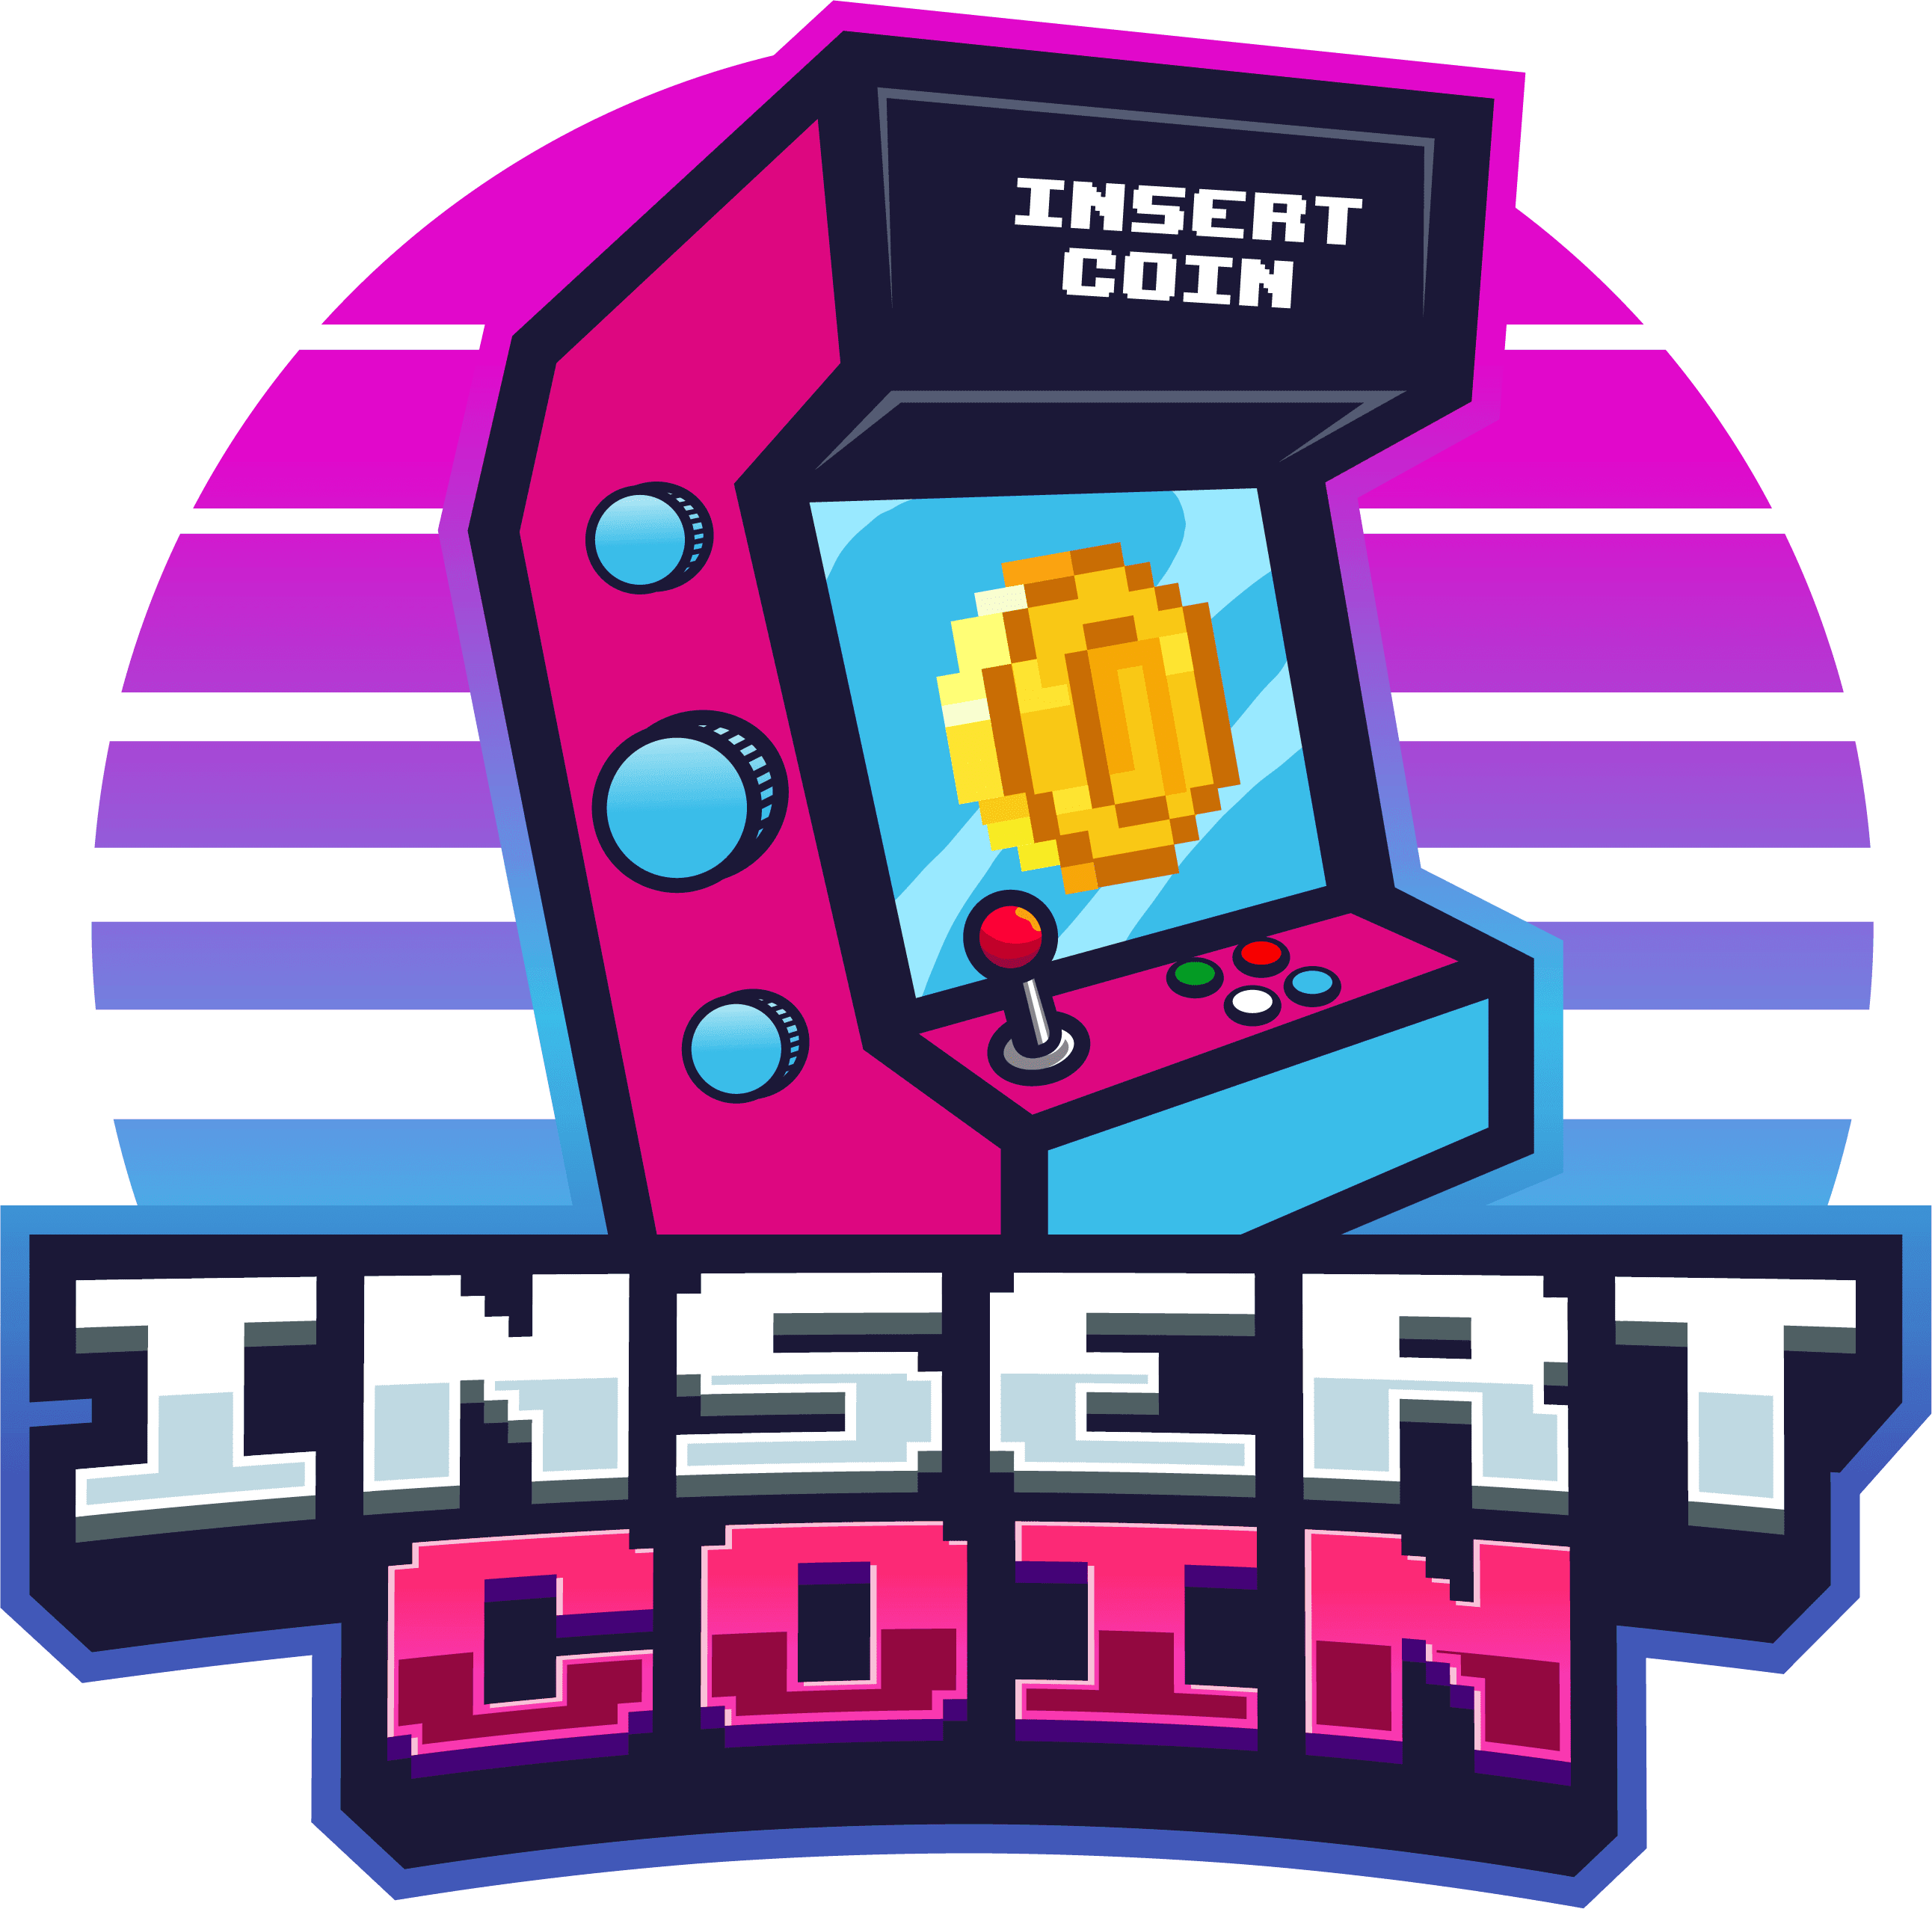 Insert Coin